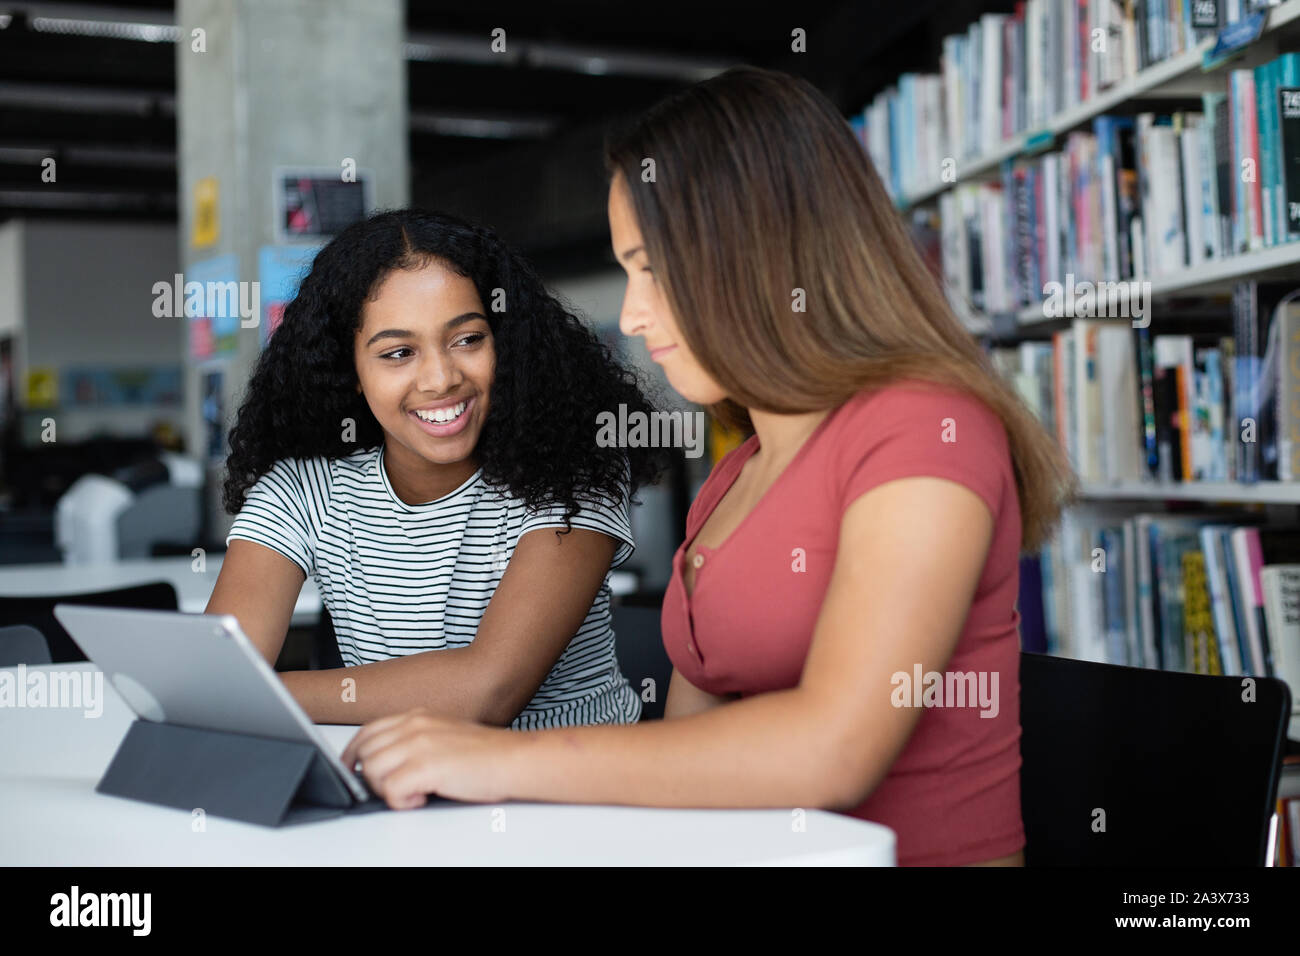 Les étudiantes du secondaire étudiant with digital tablet in library Banque D'Images